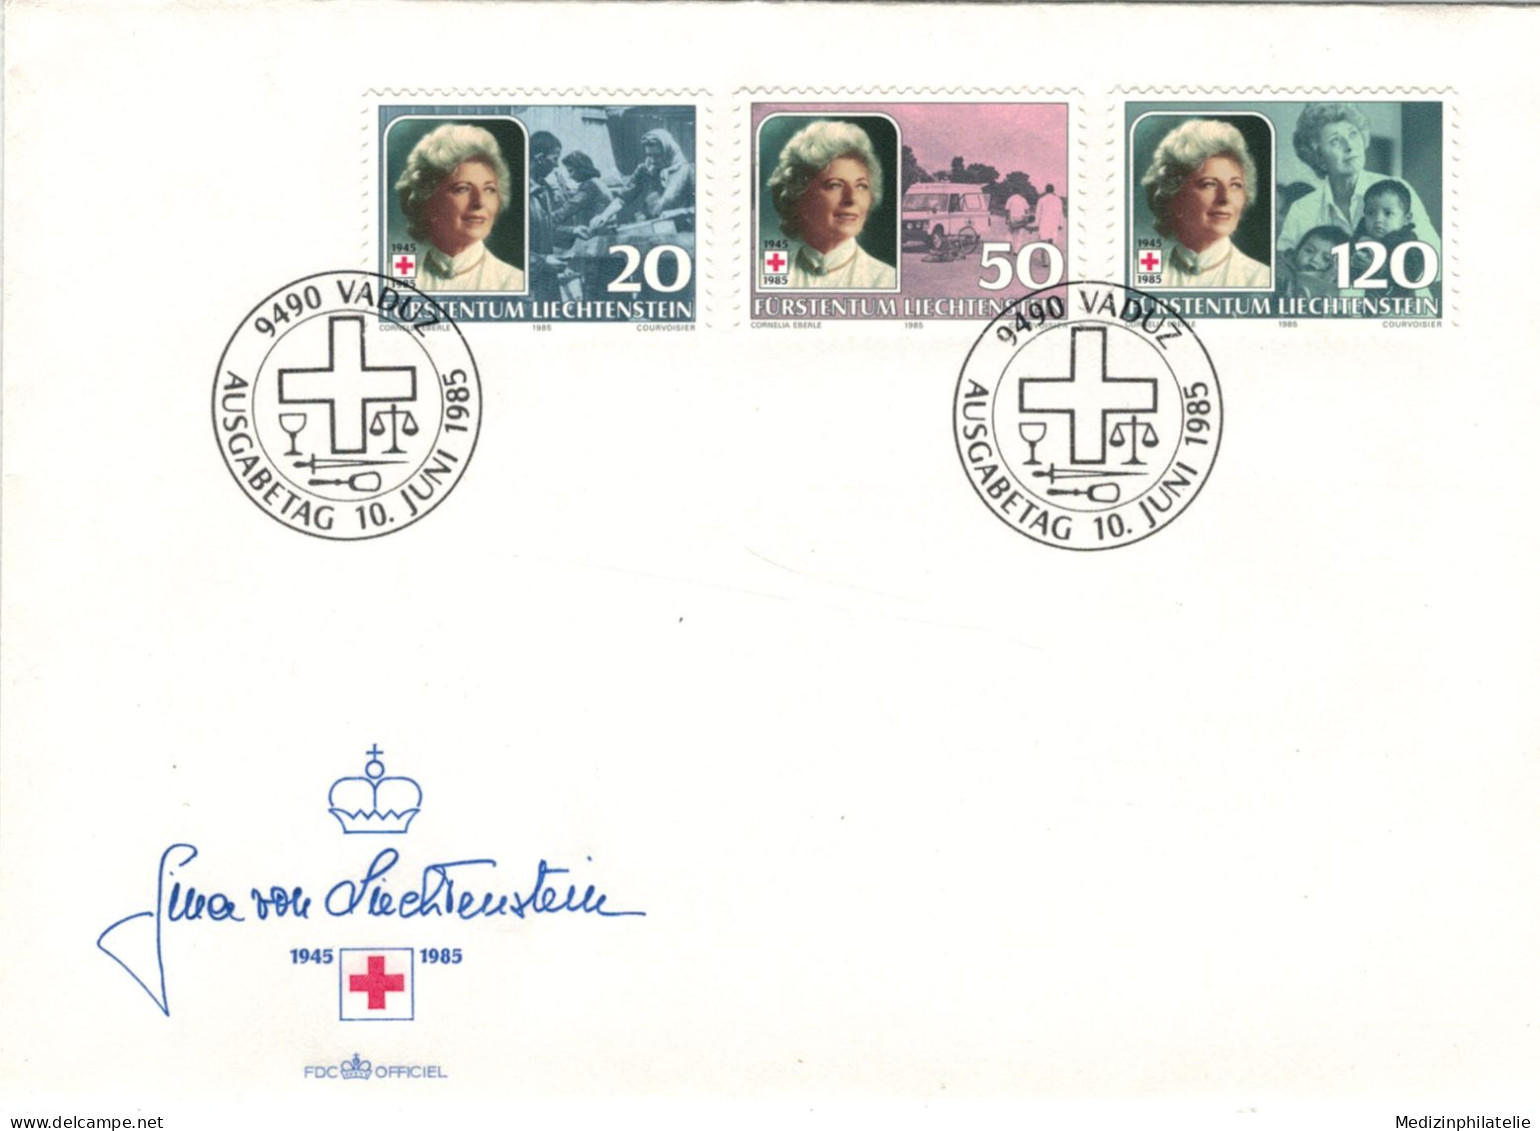 Rotes Kreuz - 9490 Vaduz 1985 Gina Von Liechtenstein - First Aid